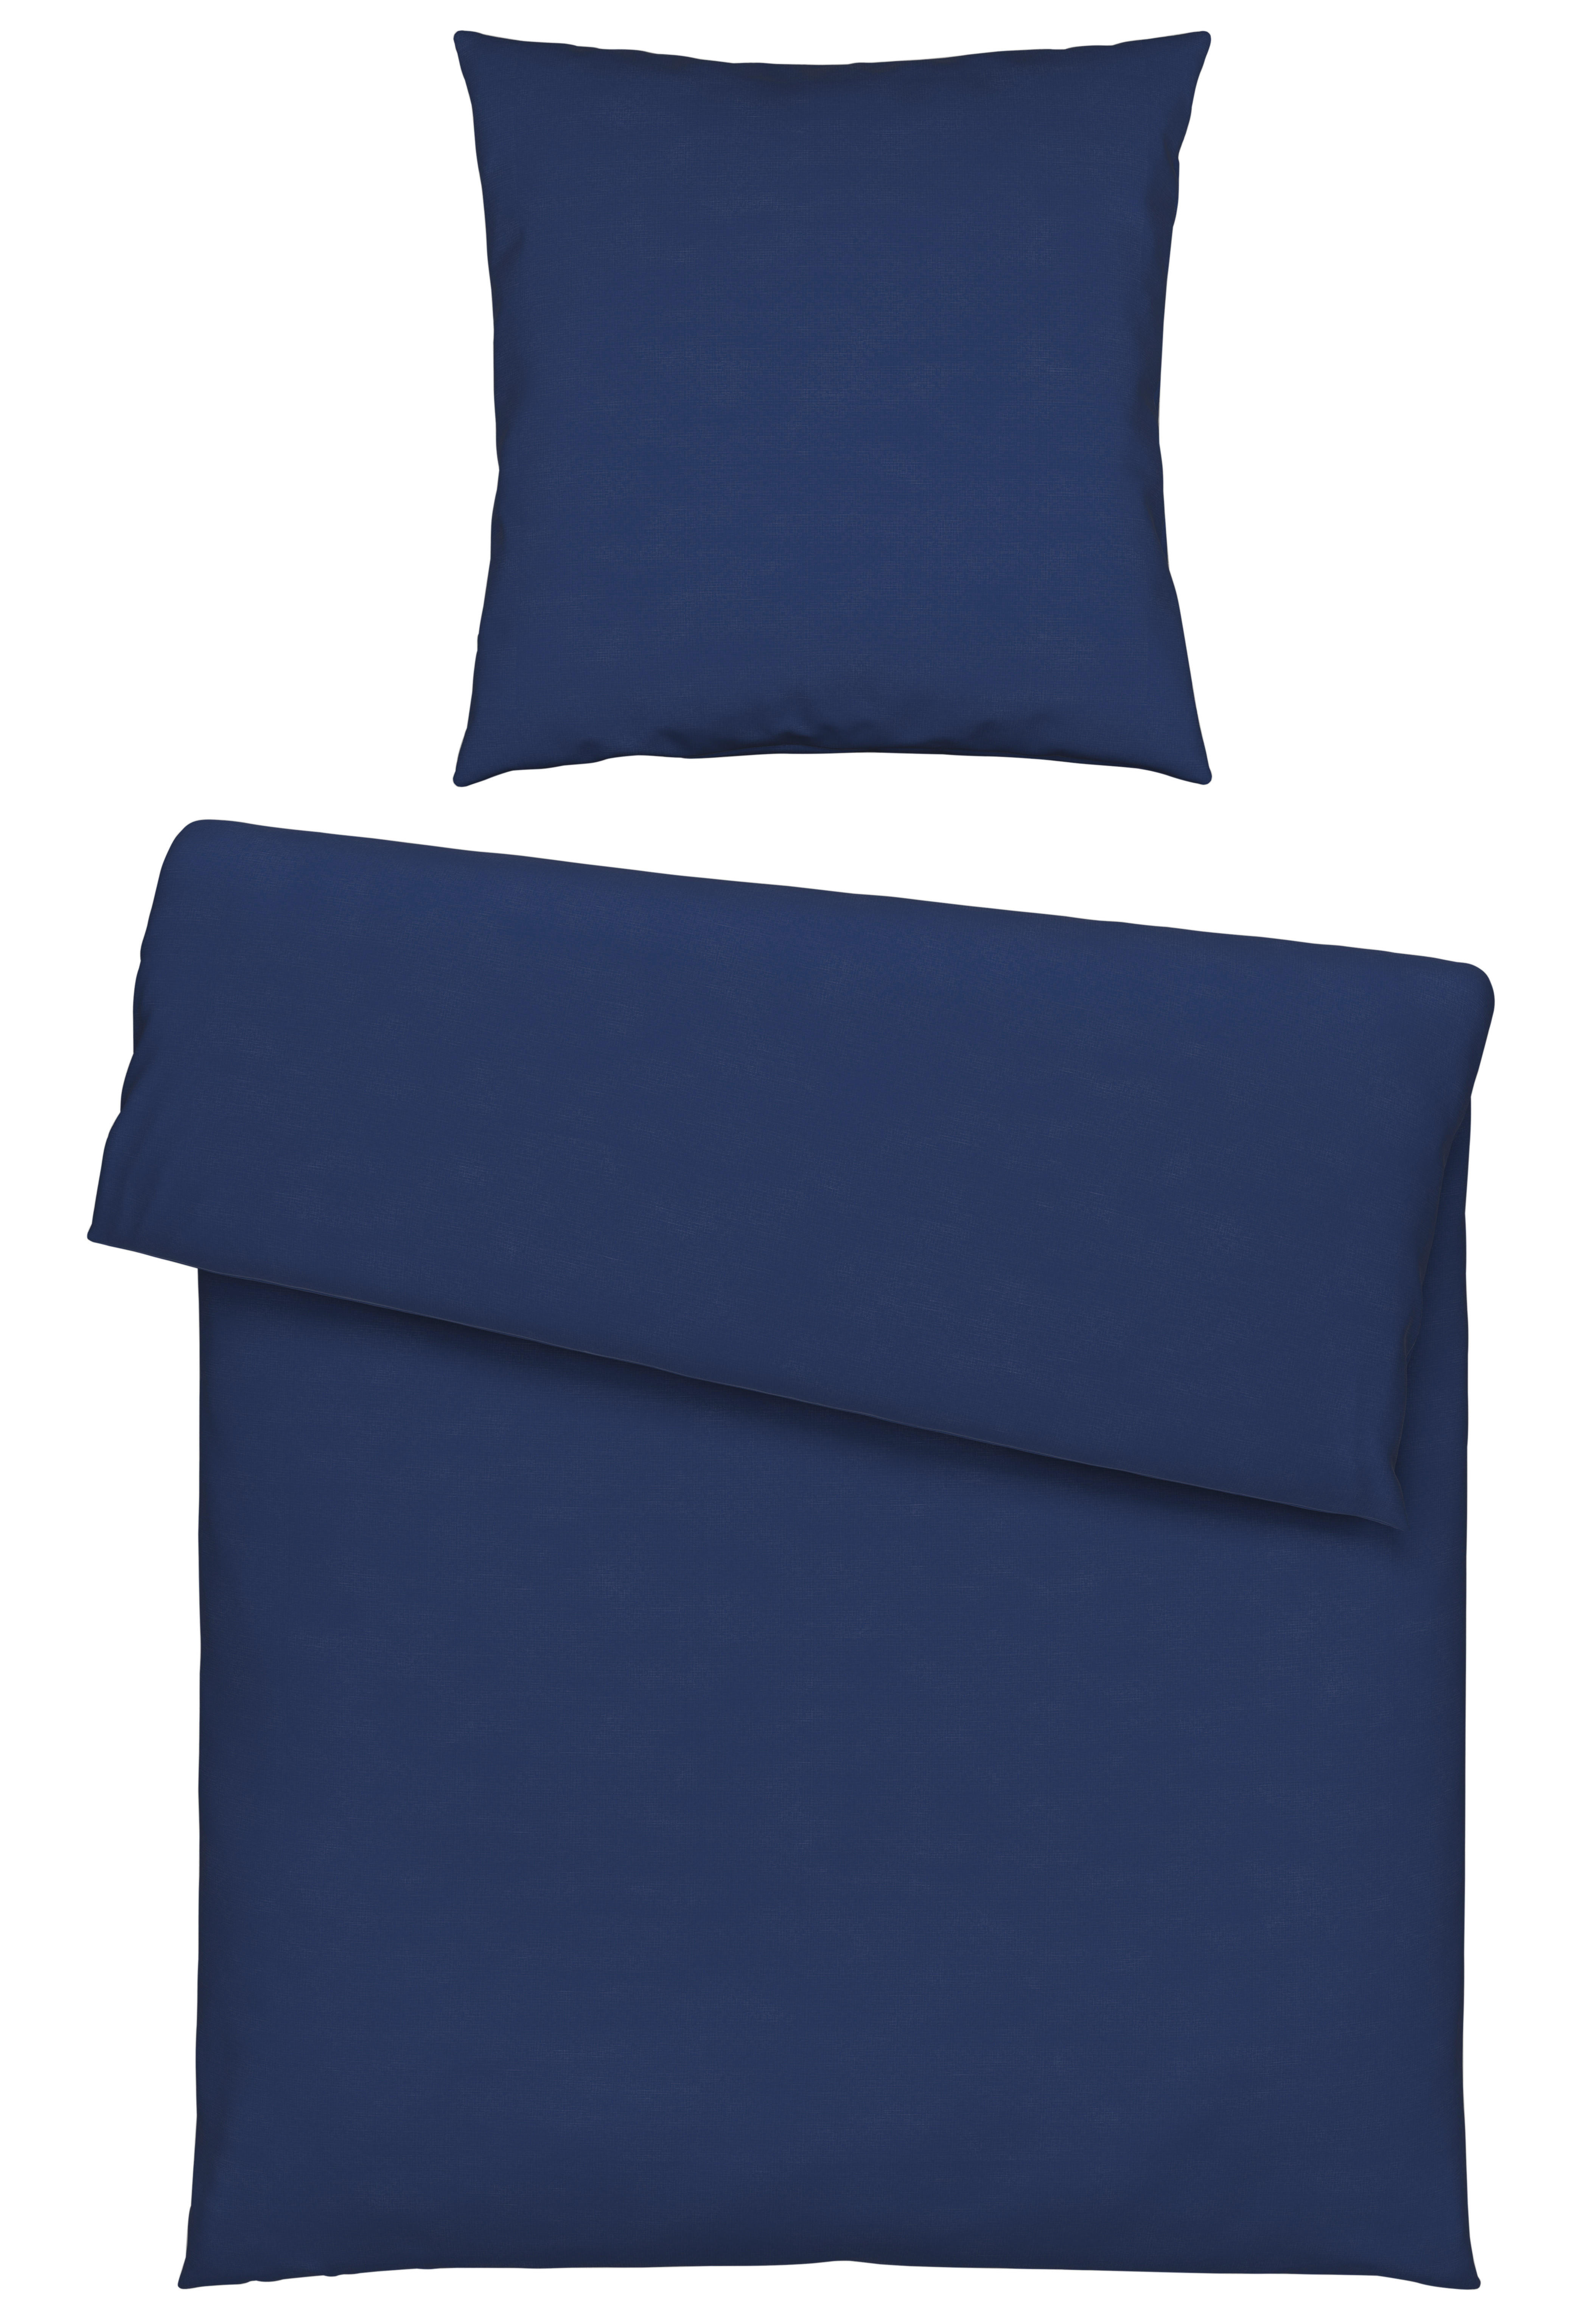 BETTWÄSCHE Renforcé  - Blau, KONVENTIONELL, Textil (135/200cm) - Bio:Vio